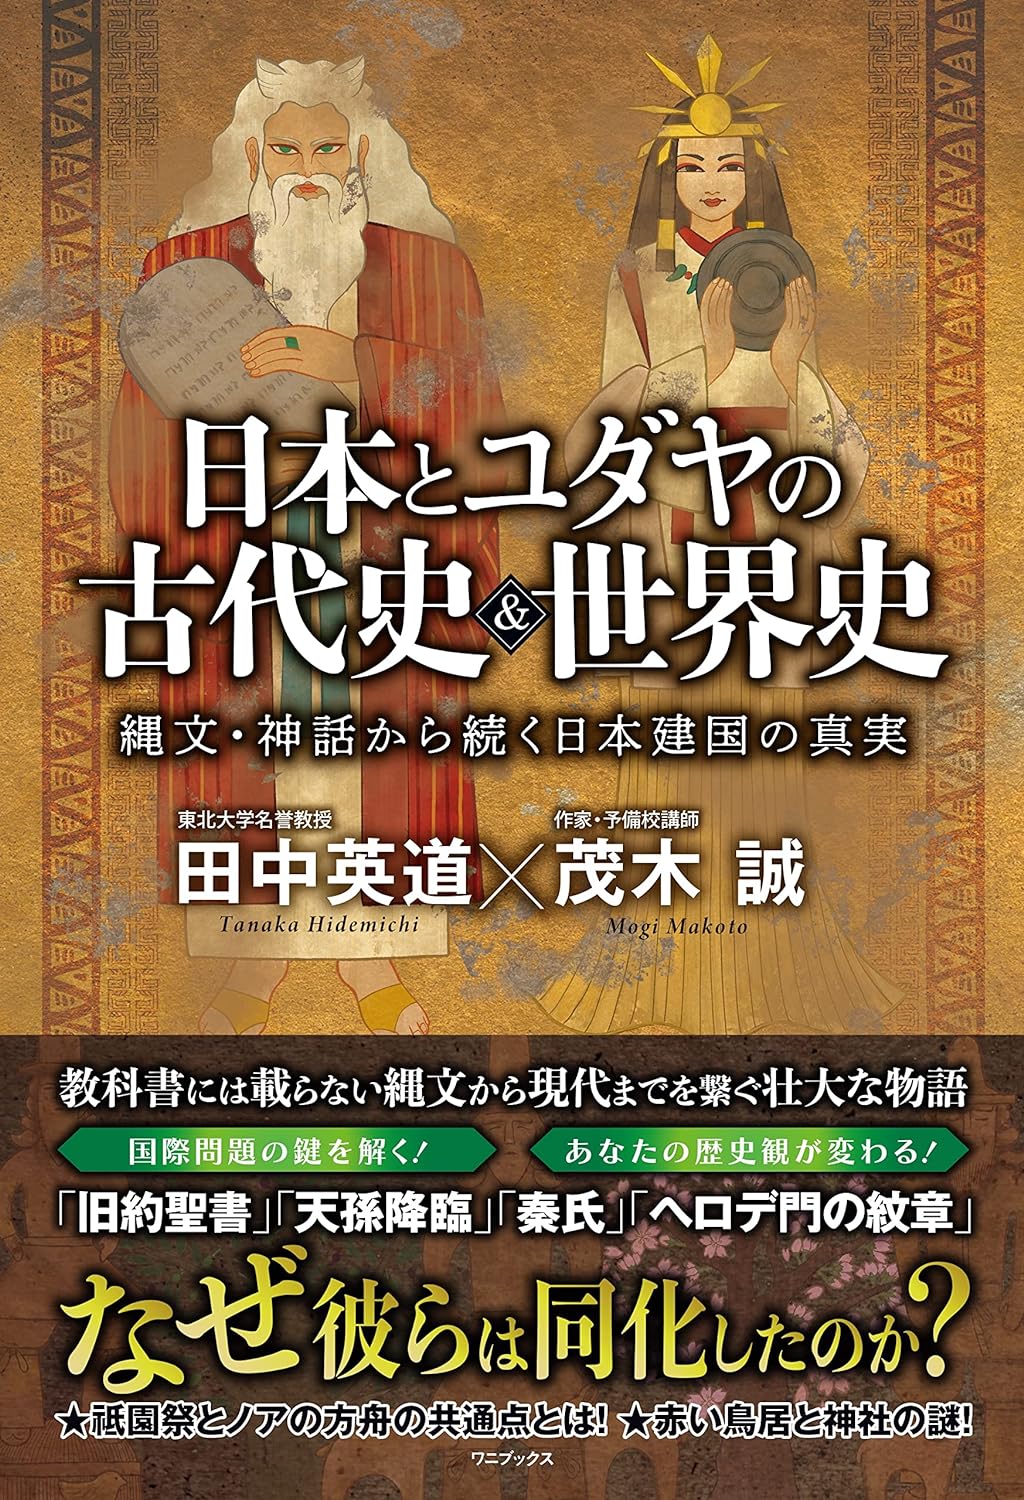 「日本とユダヤの古代史&世界史 - 縄文・神話から続く日本建国の真実 - 単行本 –
」